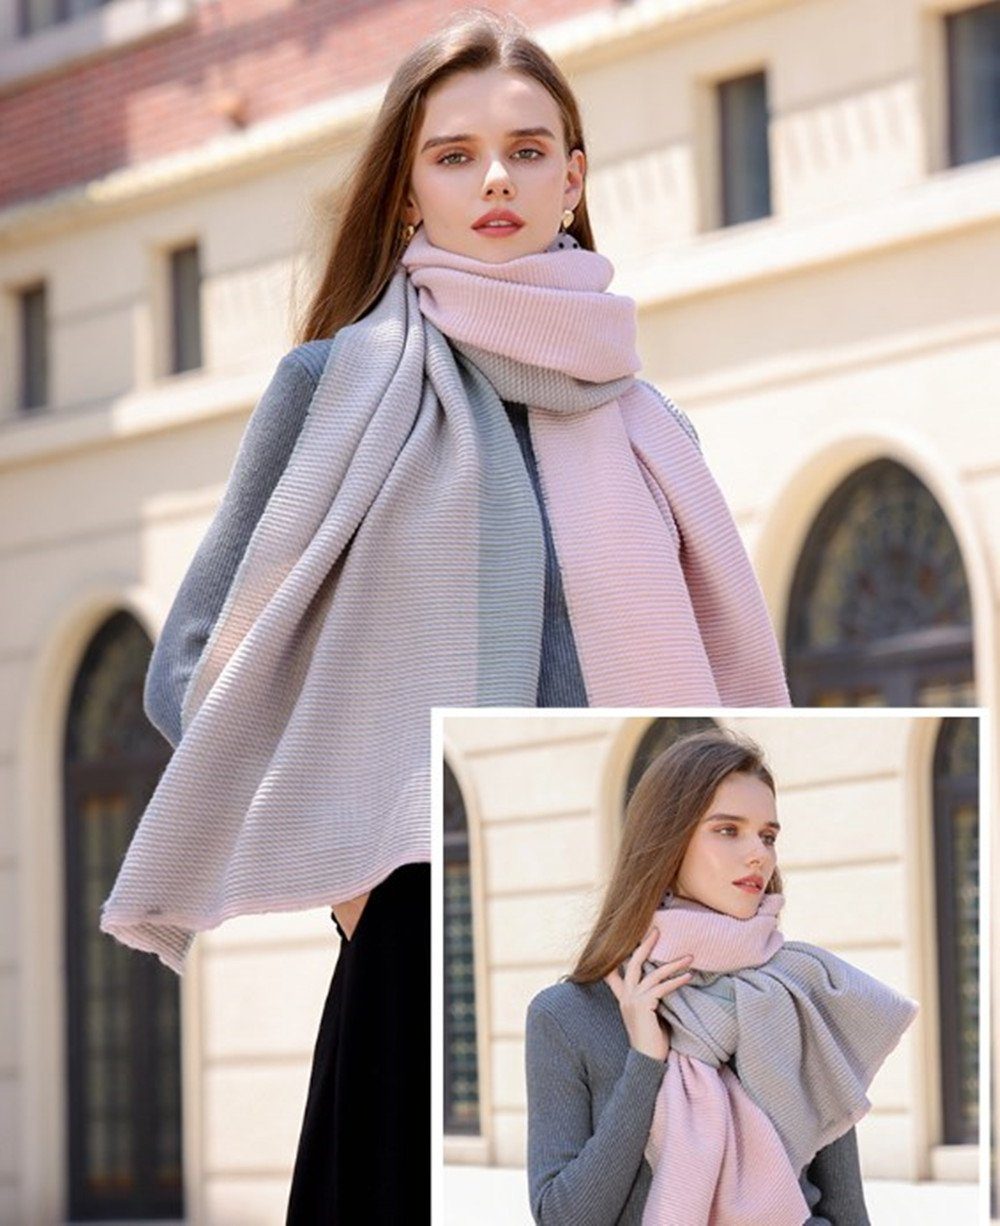 XDeer Modeschal Damen Schal,XL Winter Schal Poncho Qualität, zweiseitige feine Linie,Damen Halstuch Geschenk für Frauen in verschiedenen Farben pink